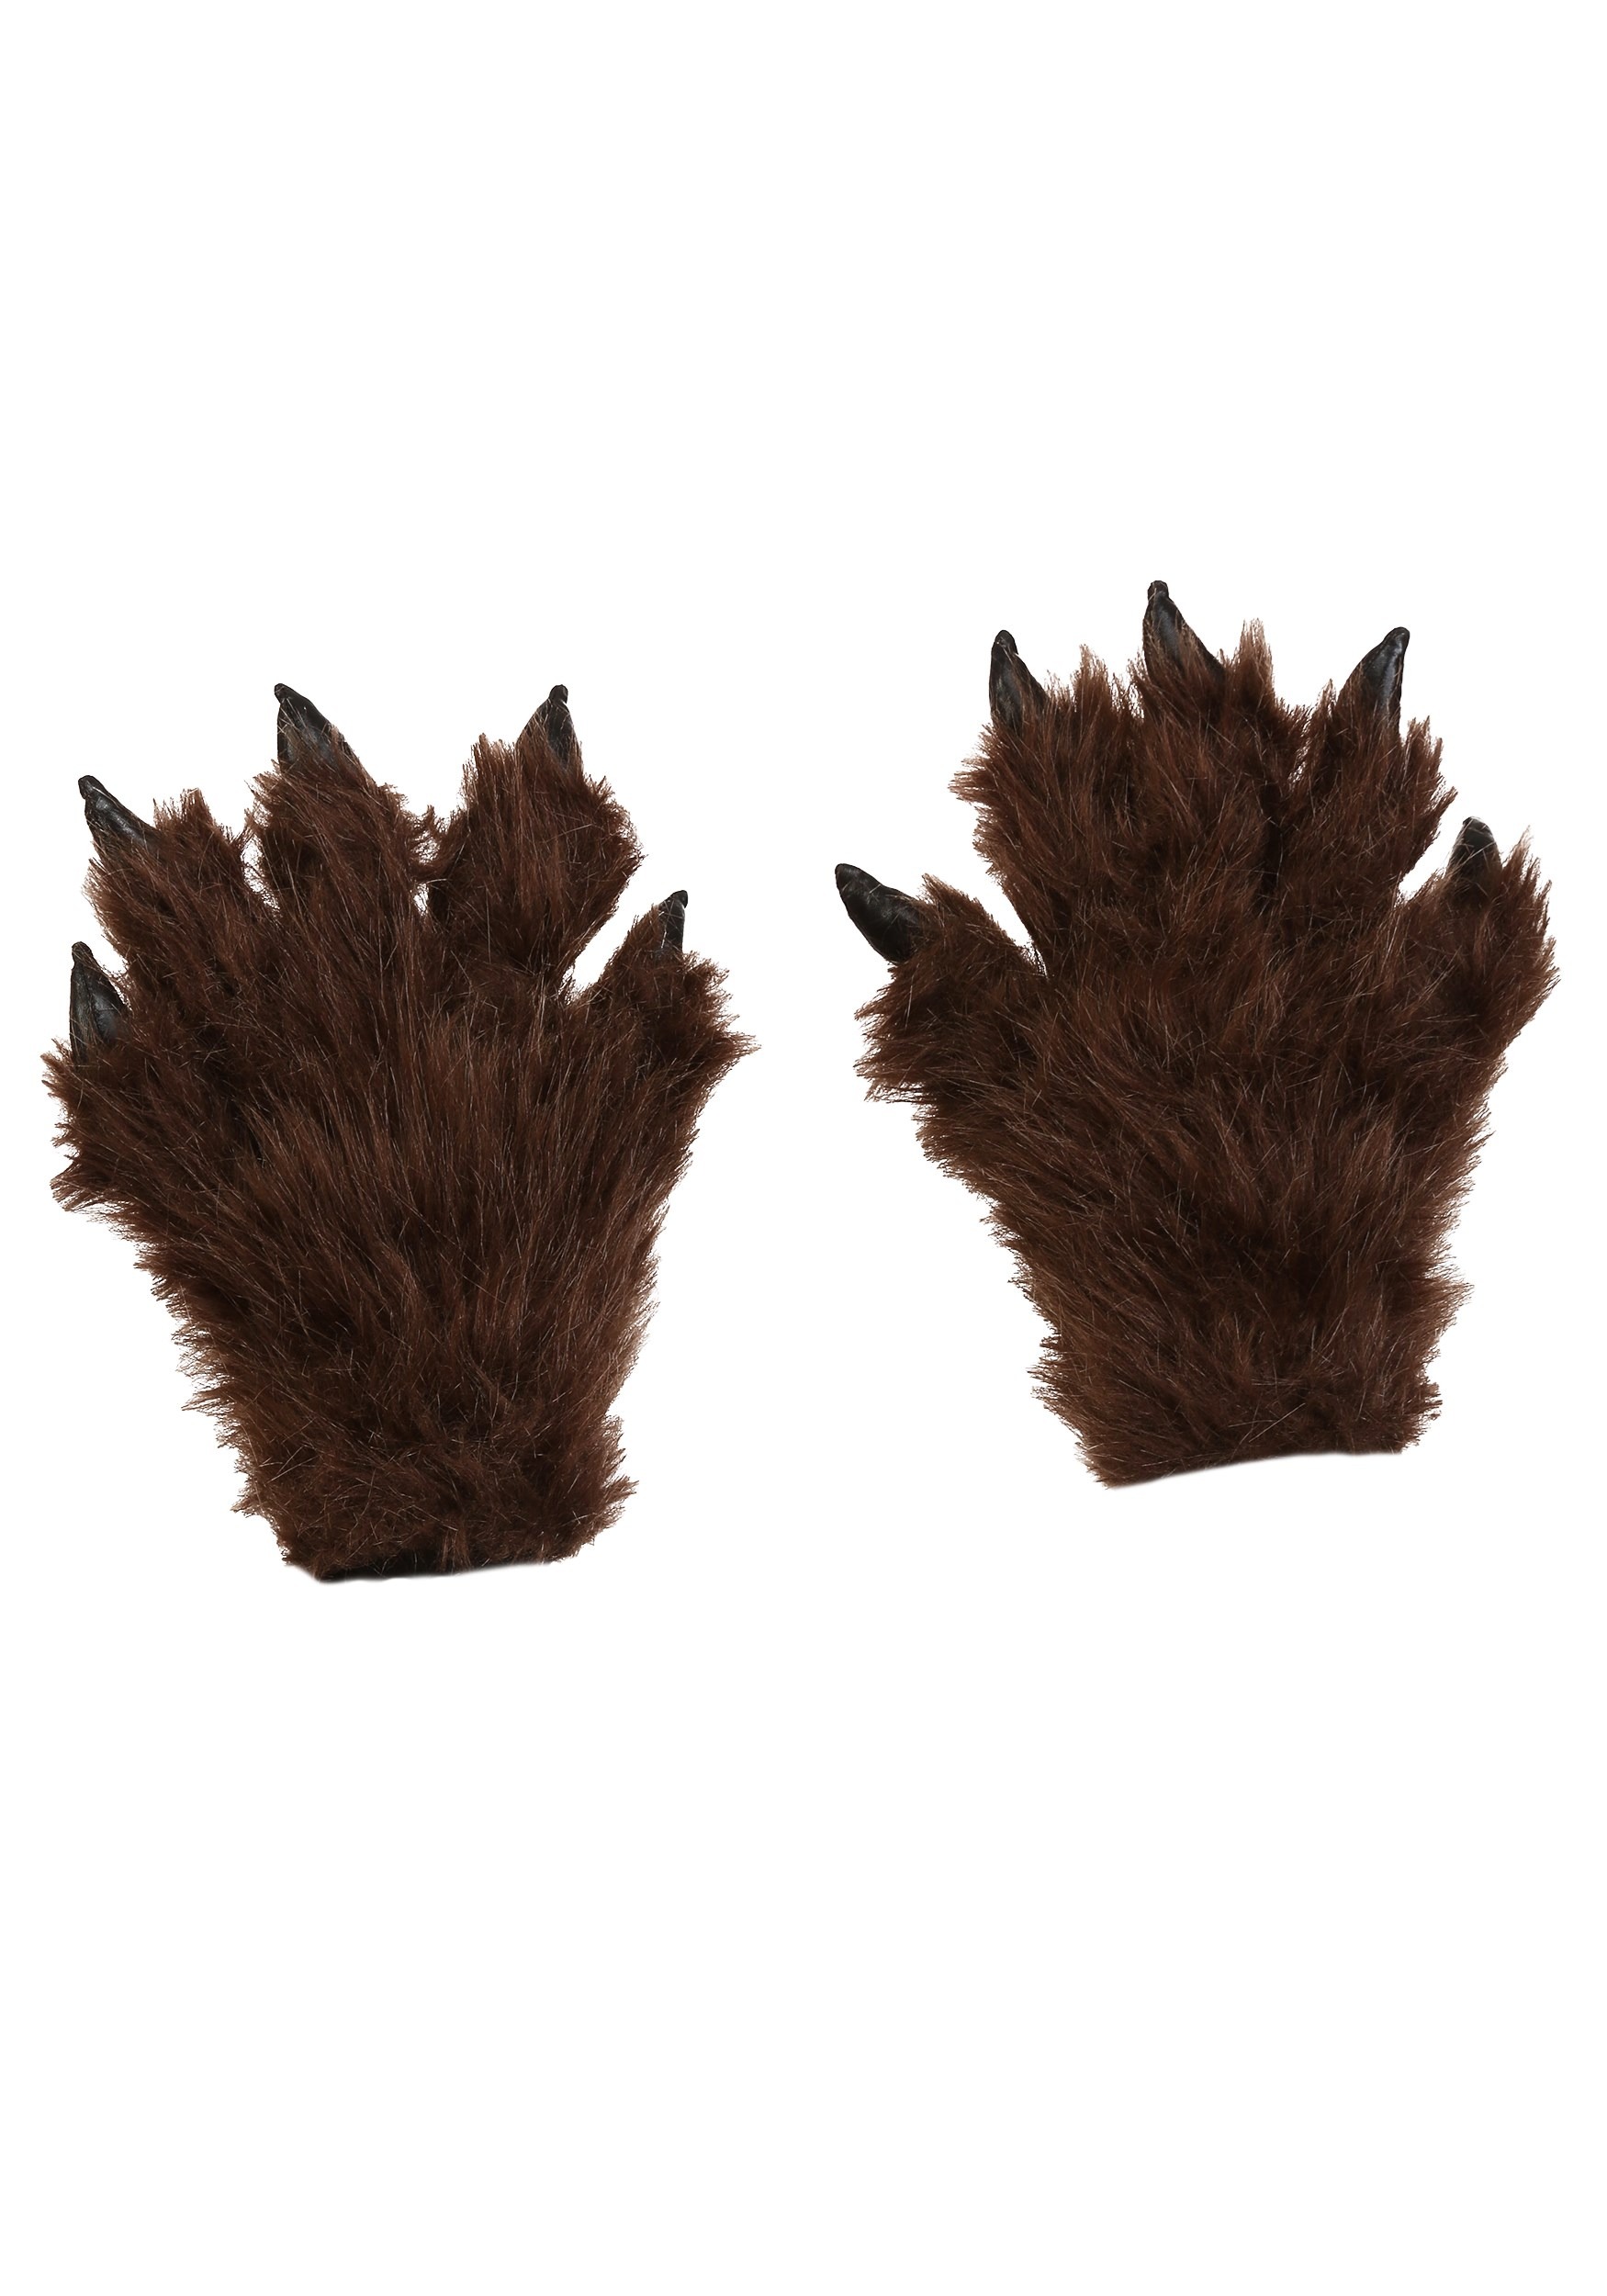 Hairy Kids Werewolf Gloves